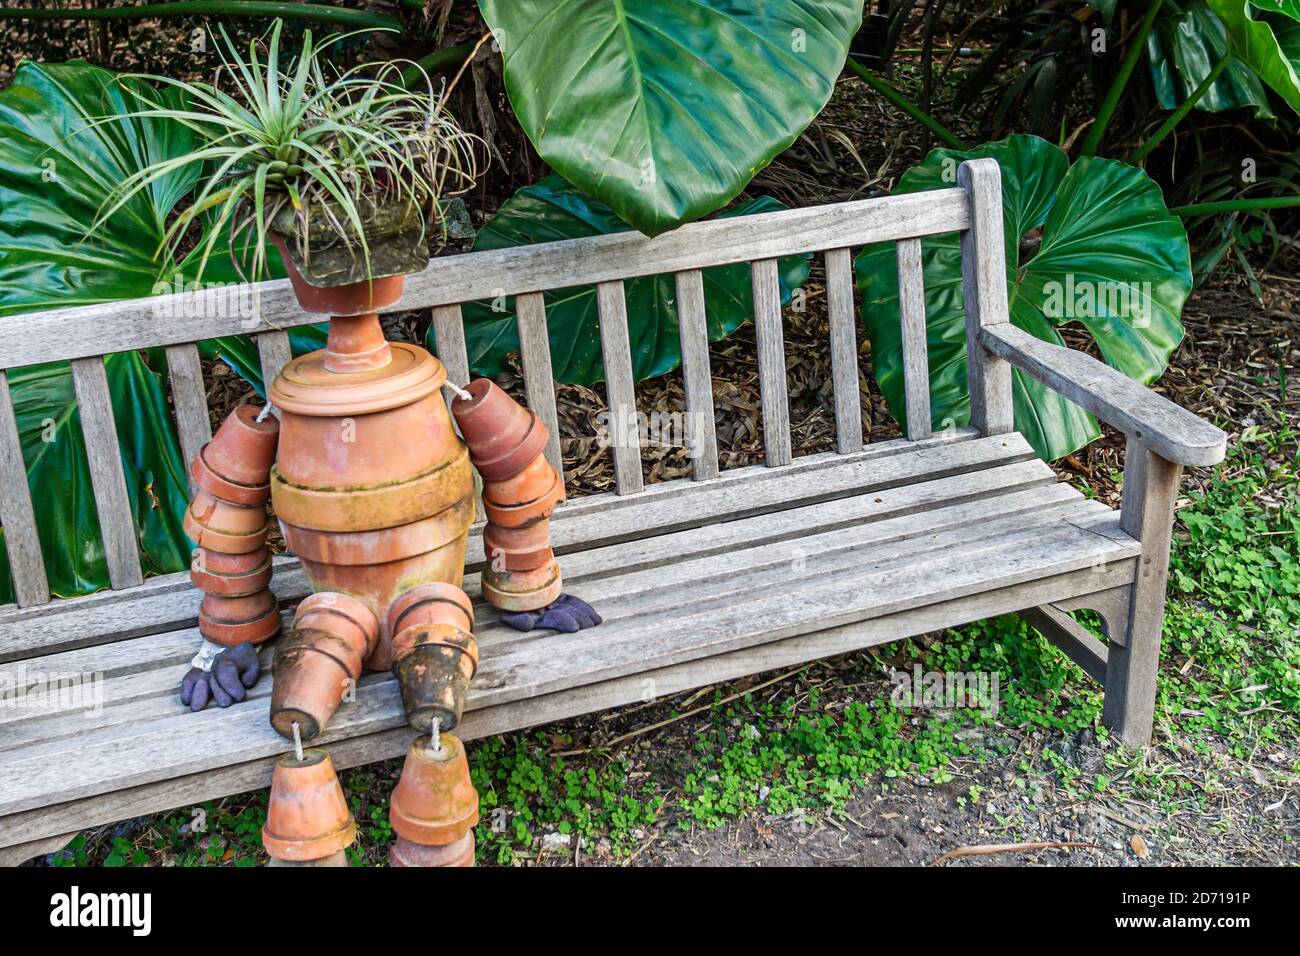 Miami Florida,Coral Gables Fairchild Tropical Garden,art installation bench human figure, Stock Photo